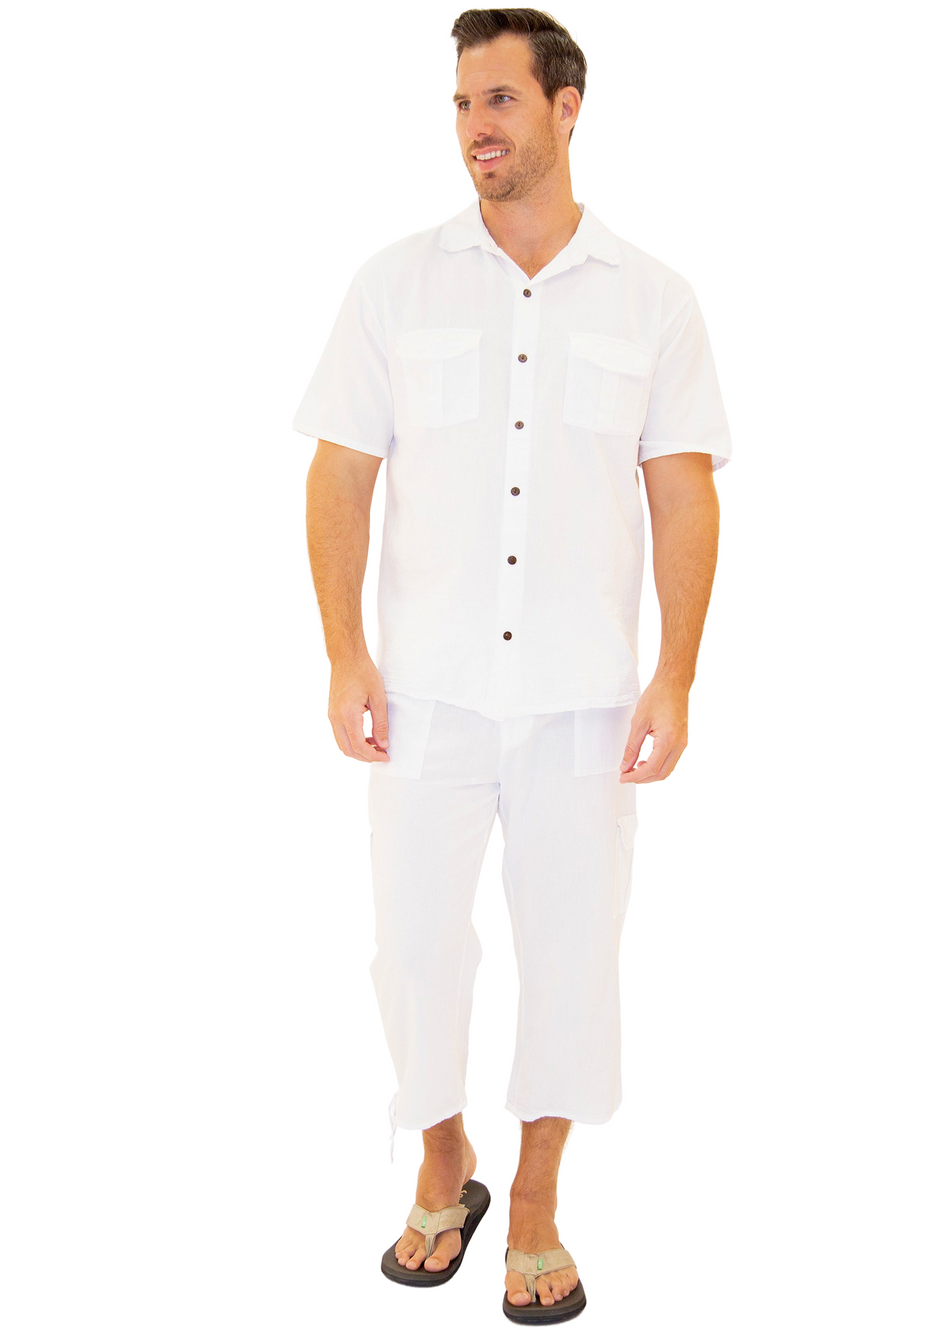 GZ1009 - White Cotton Button Down Pocket Shirt